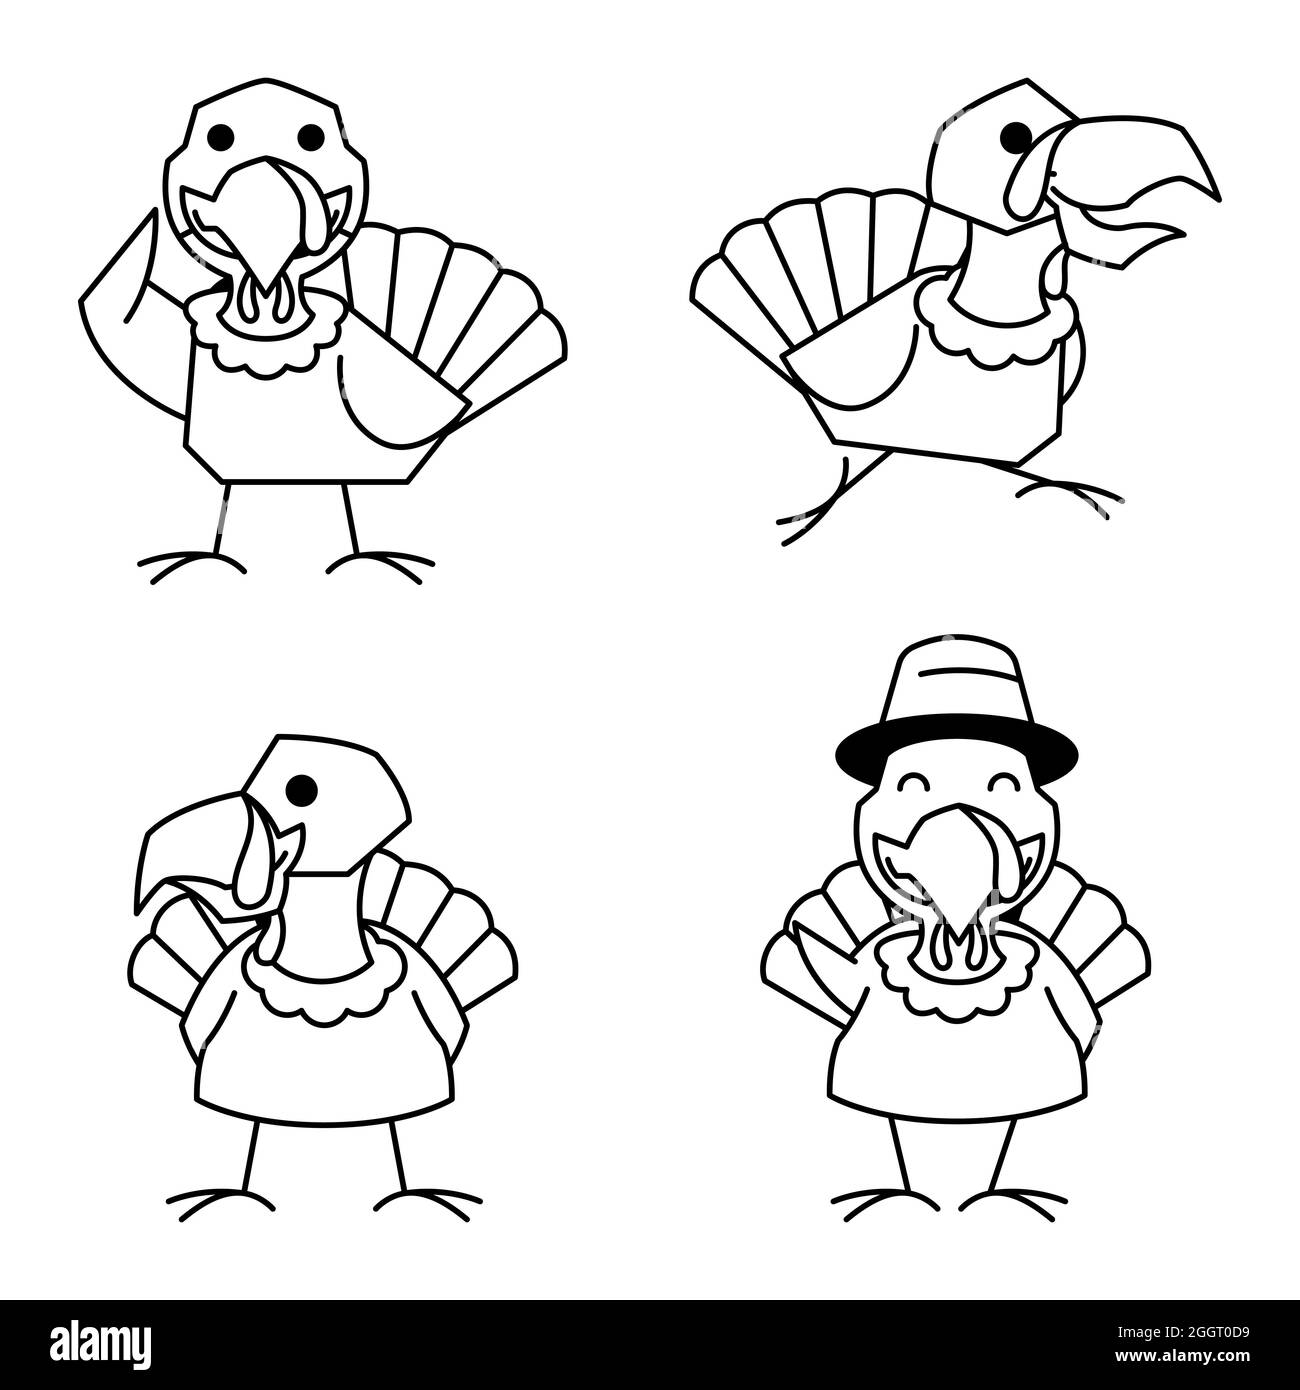 Tacchino Bird Rooster Autunno Autunno Thanksgiving personaggio Cartoon Line Art Illustrazione Vettoriale